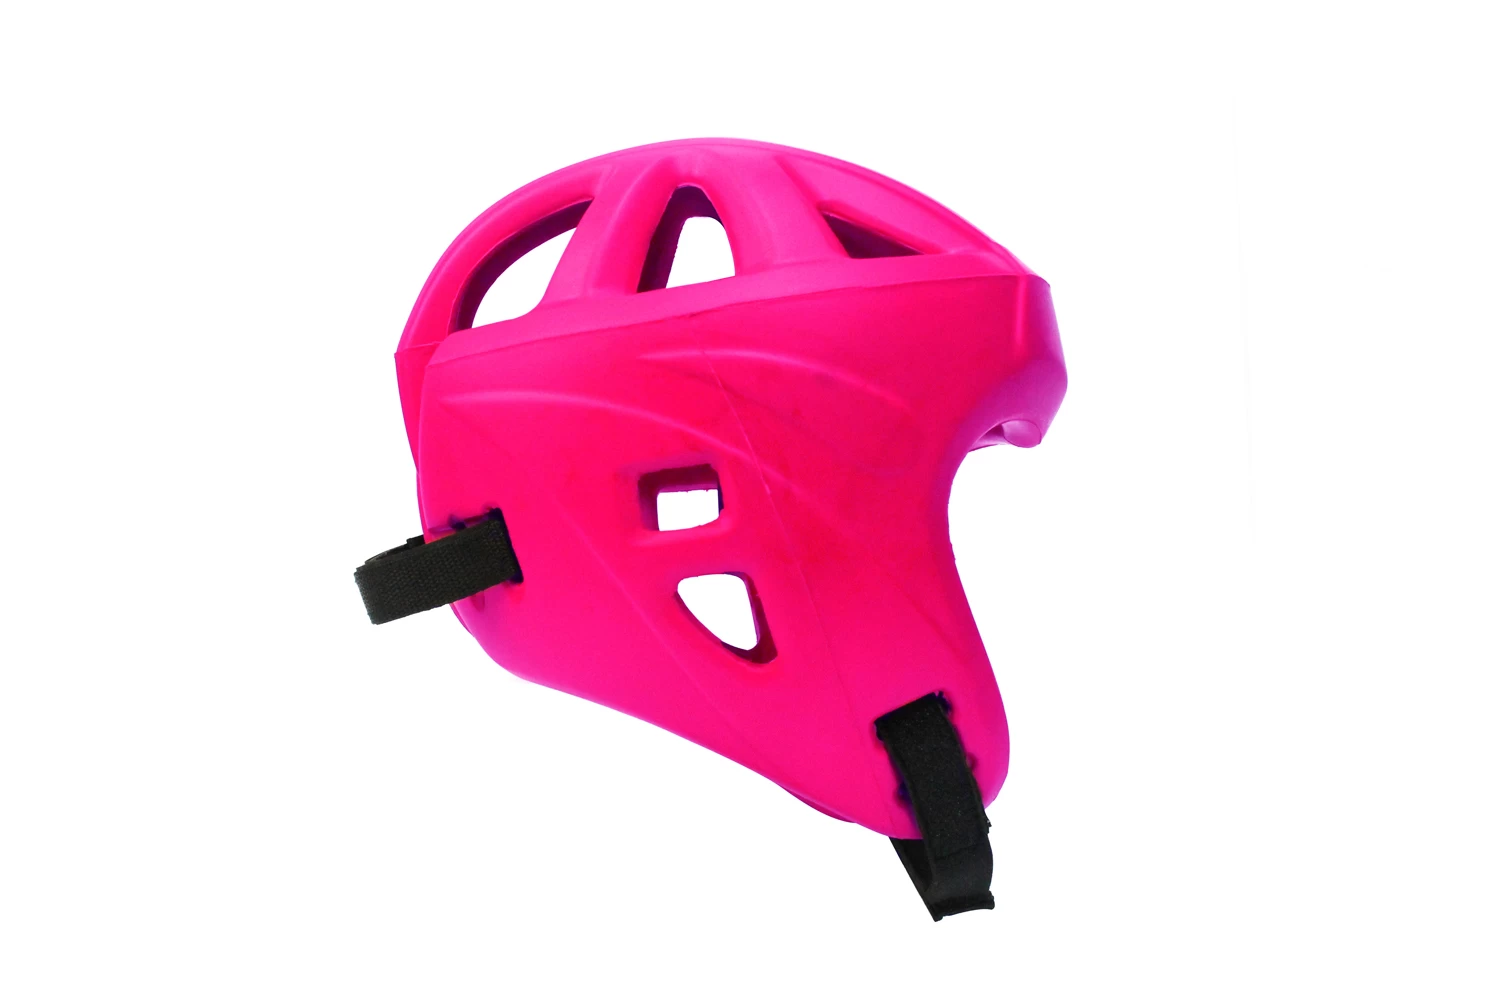 Китай Китай PU Полиуретановый профессиональный защитный шлем поставщик Китай головной убор для боксерского завода Китай производитель шлемов производителя